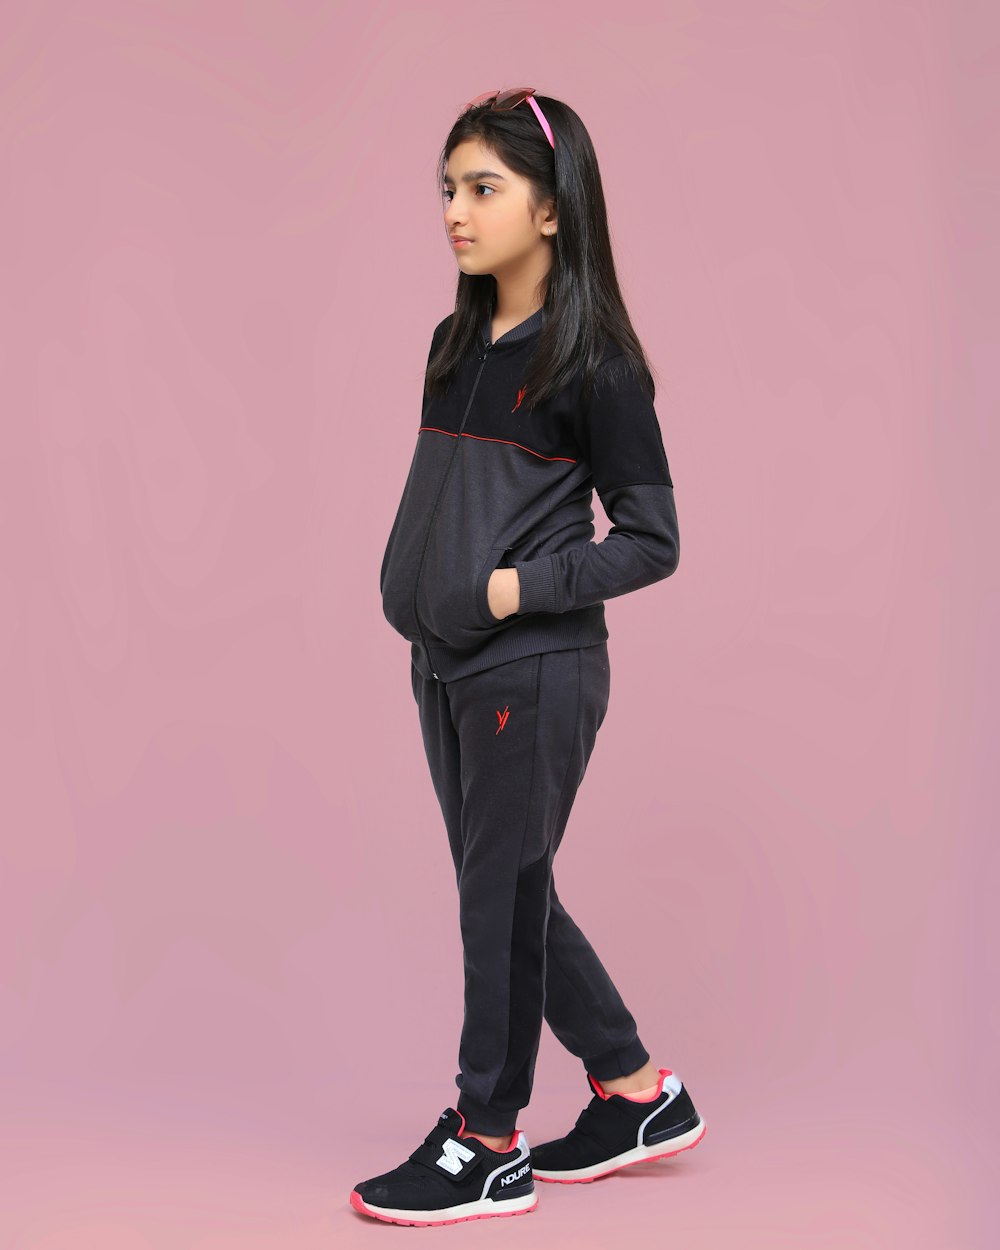 Ein junges Mädchen in schwarzem Sweatshirt und Jogginghose